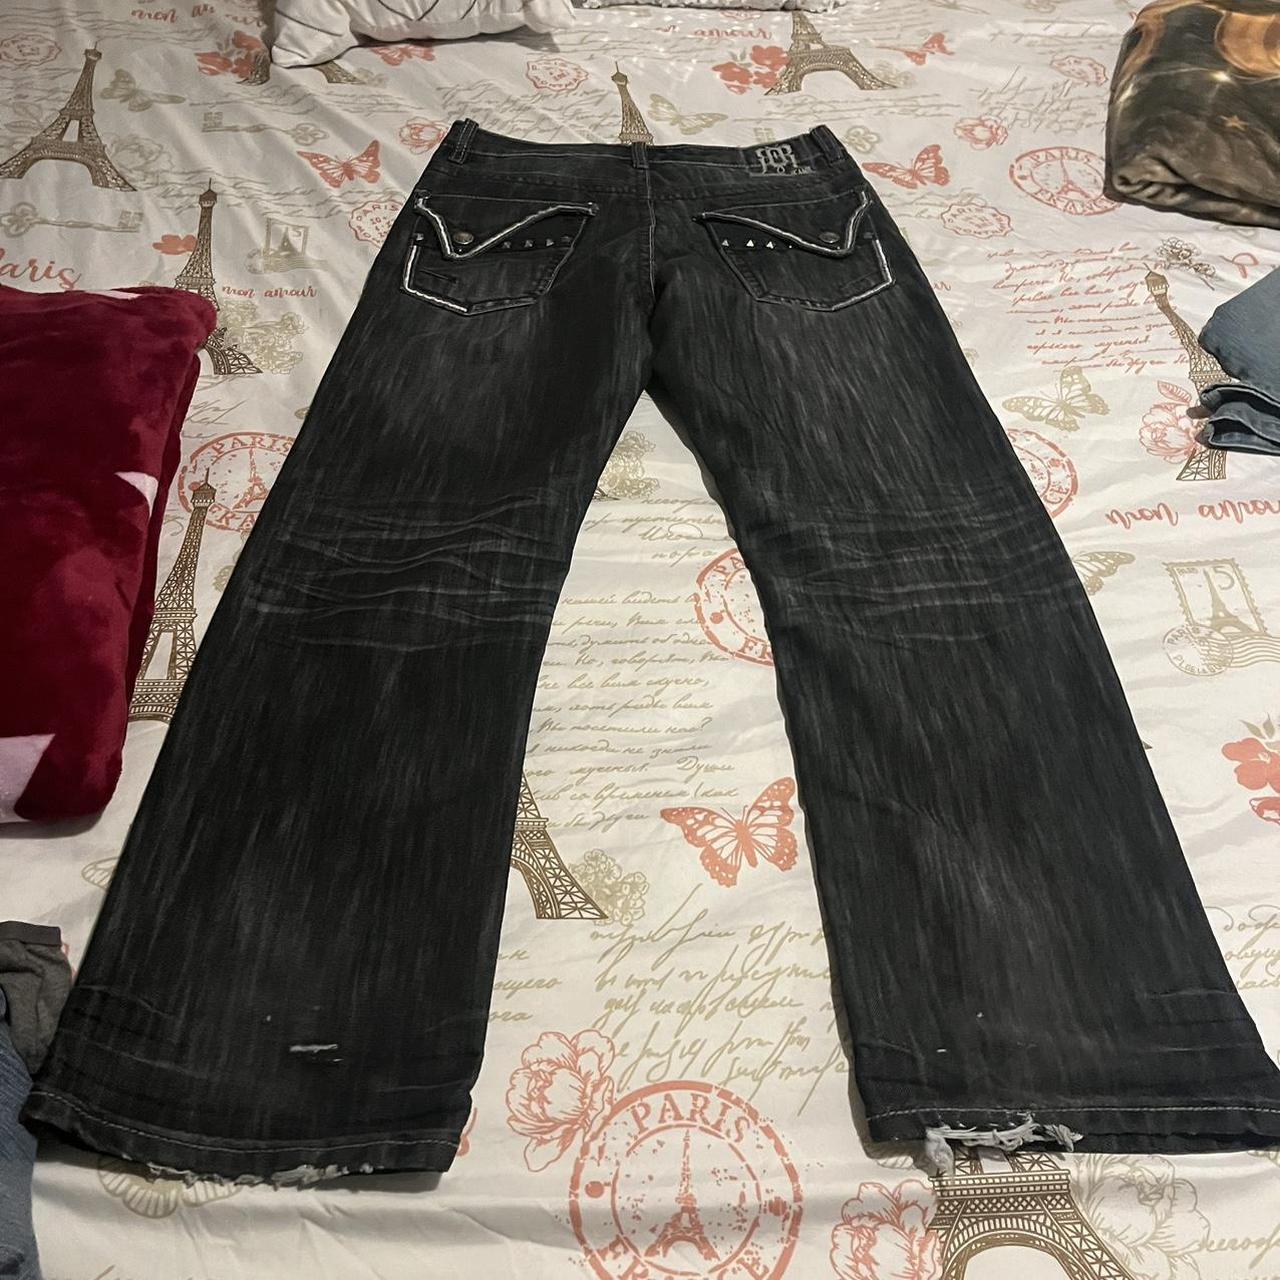 baggy skater black washed jeans size 32x30 details:... - Depop